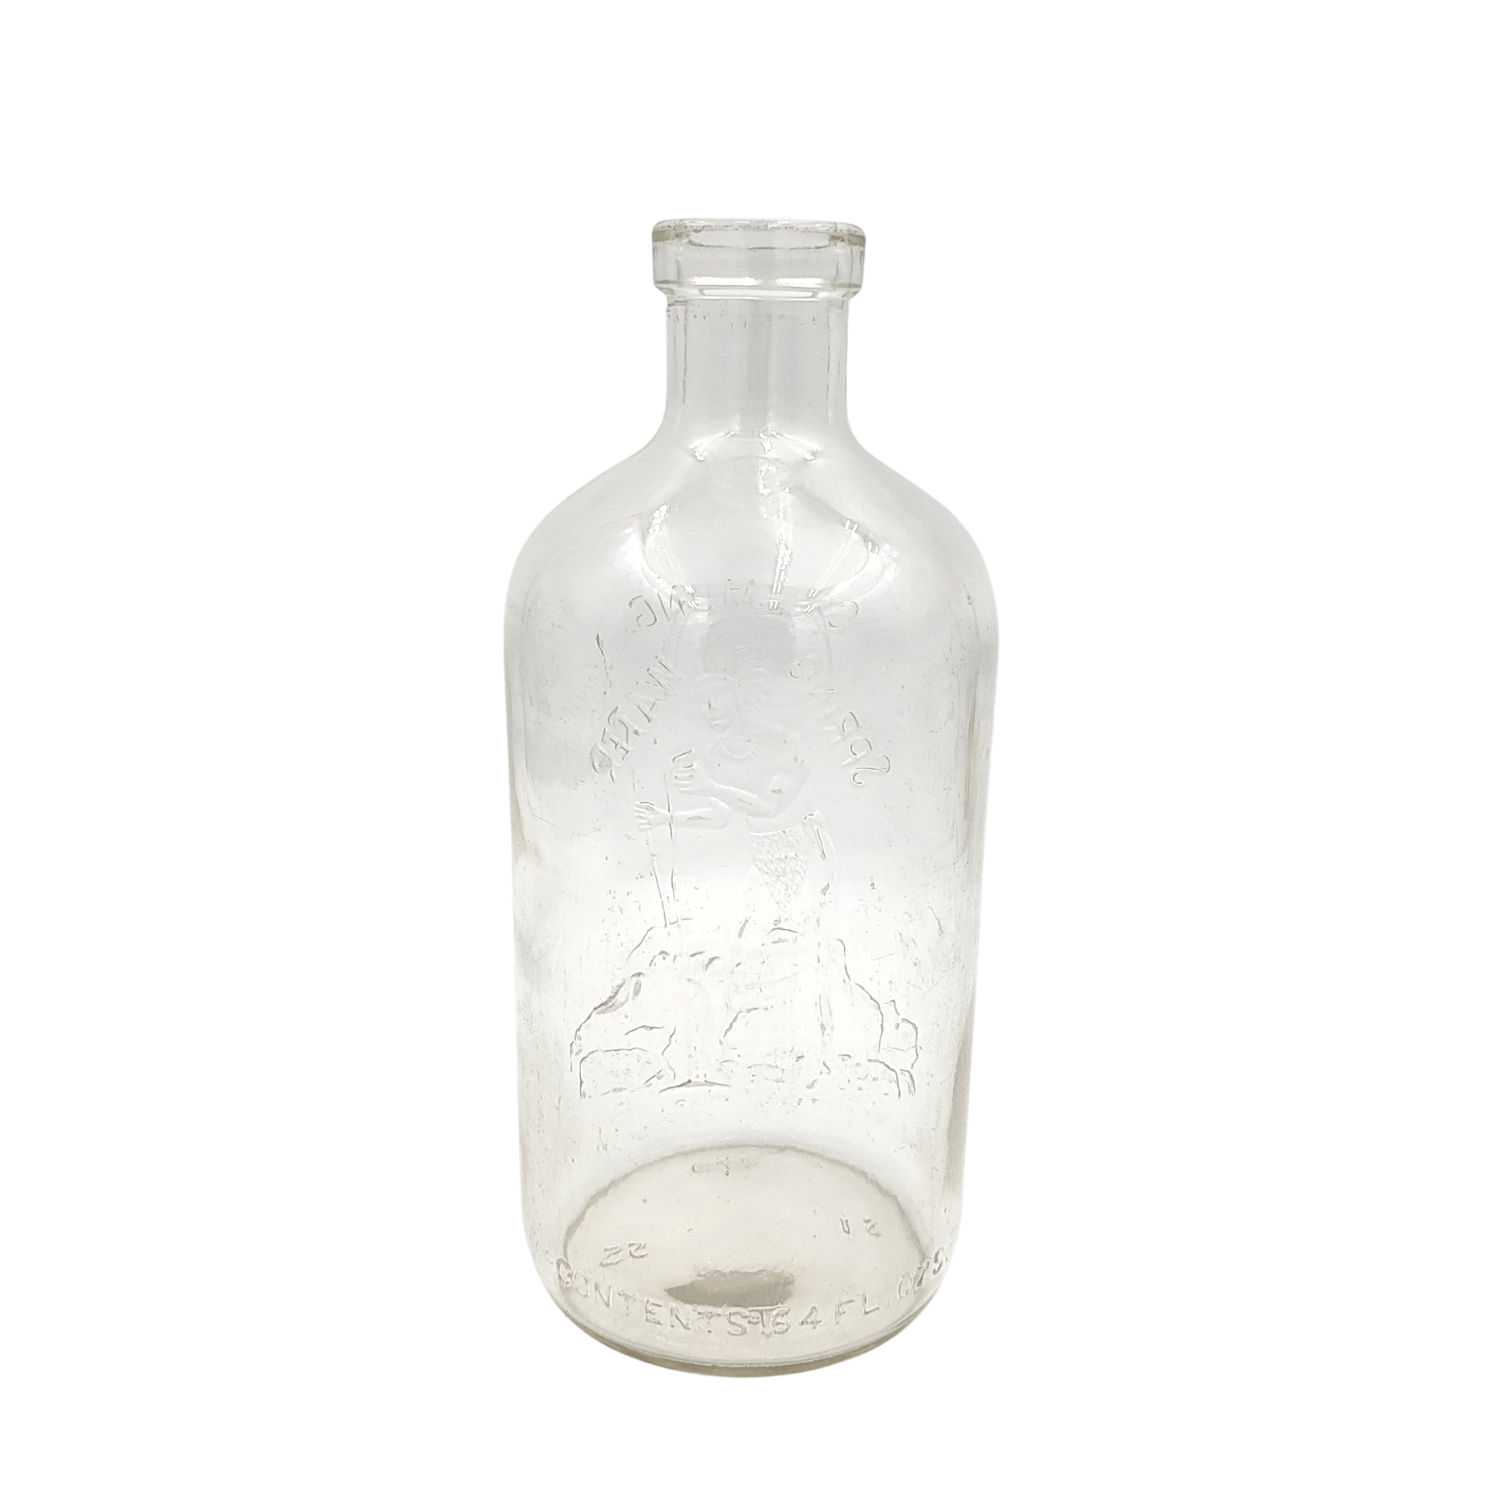 Antique Chemung Spring Water Bottle